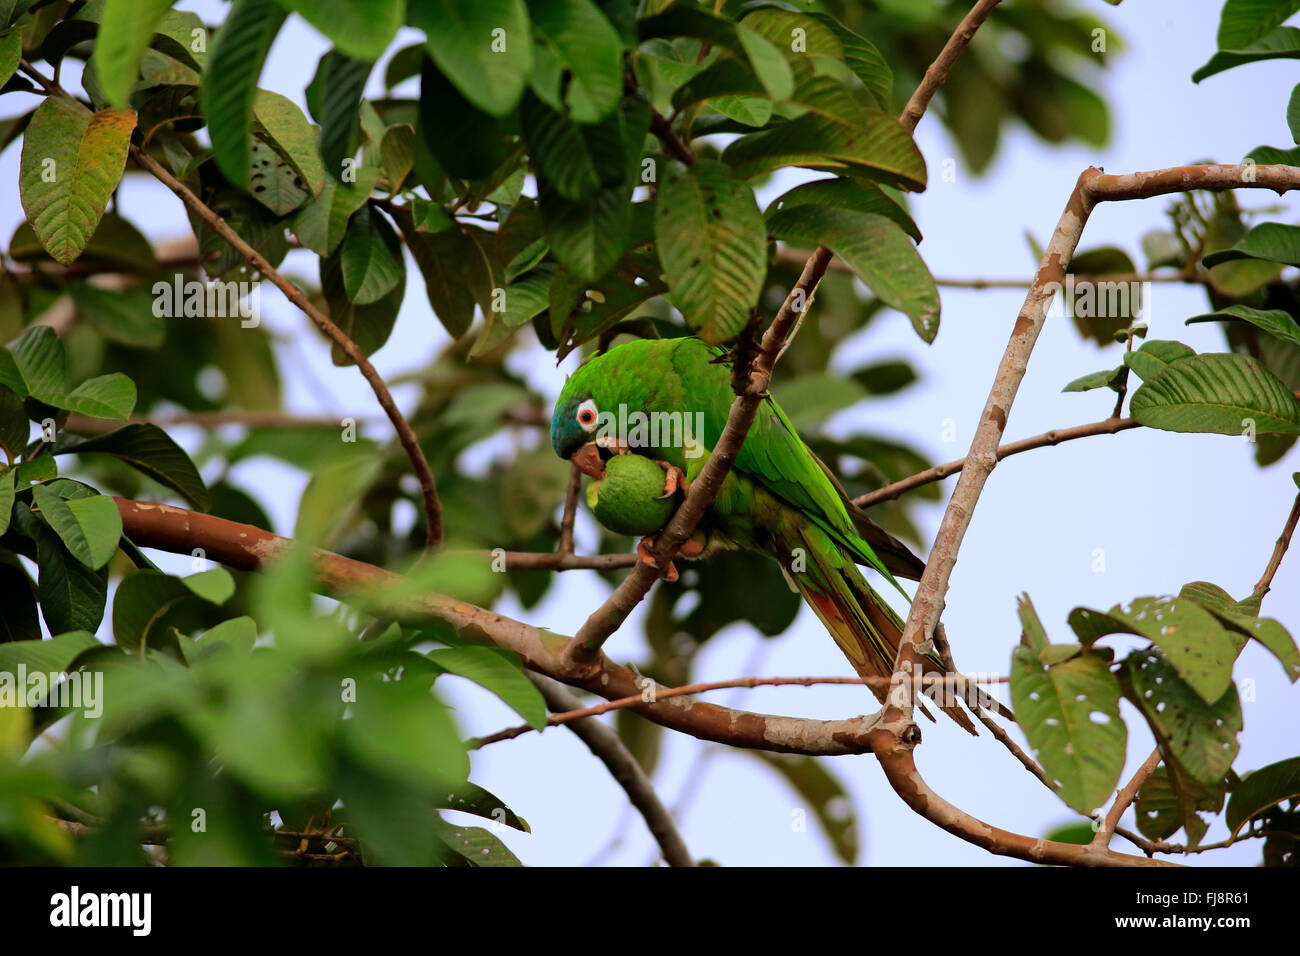 Motmot perruche, des profils sur l'arbre se nourrit de fruits, fig, Pantanal, Mato Grosso, Brésil, Amérique du Sud (Thectocercus acuticaudatus /) Banque D'Images